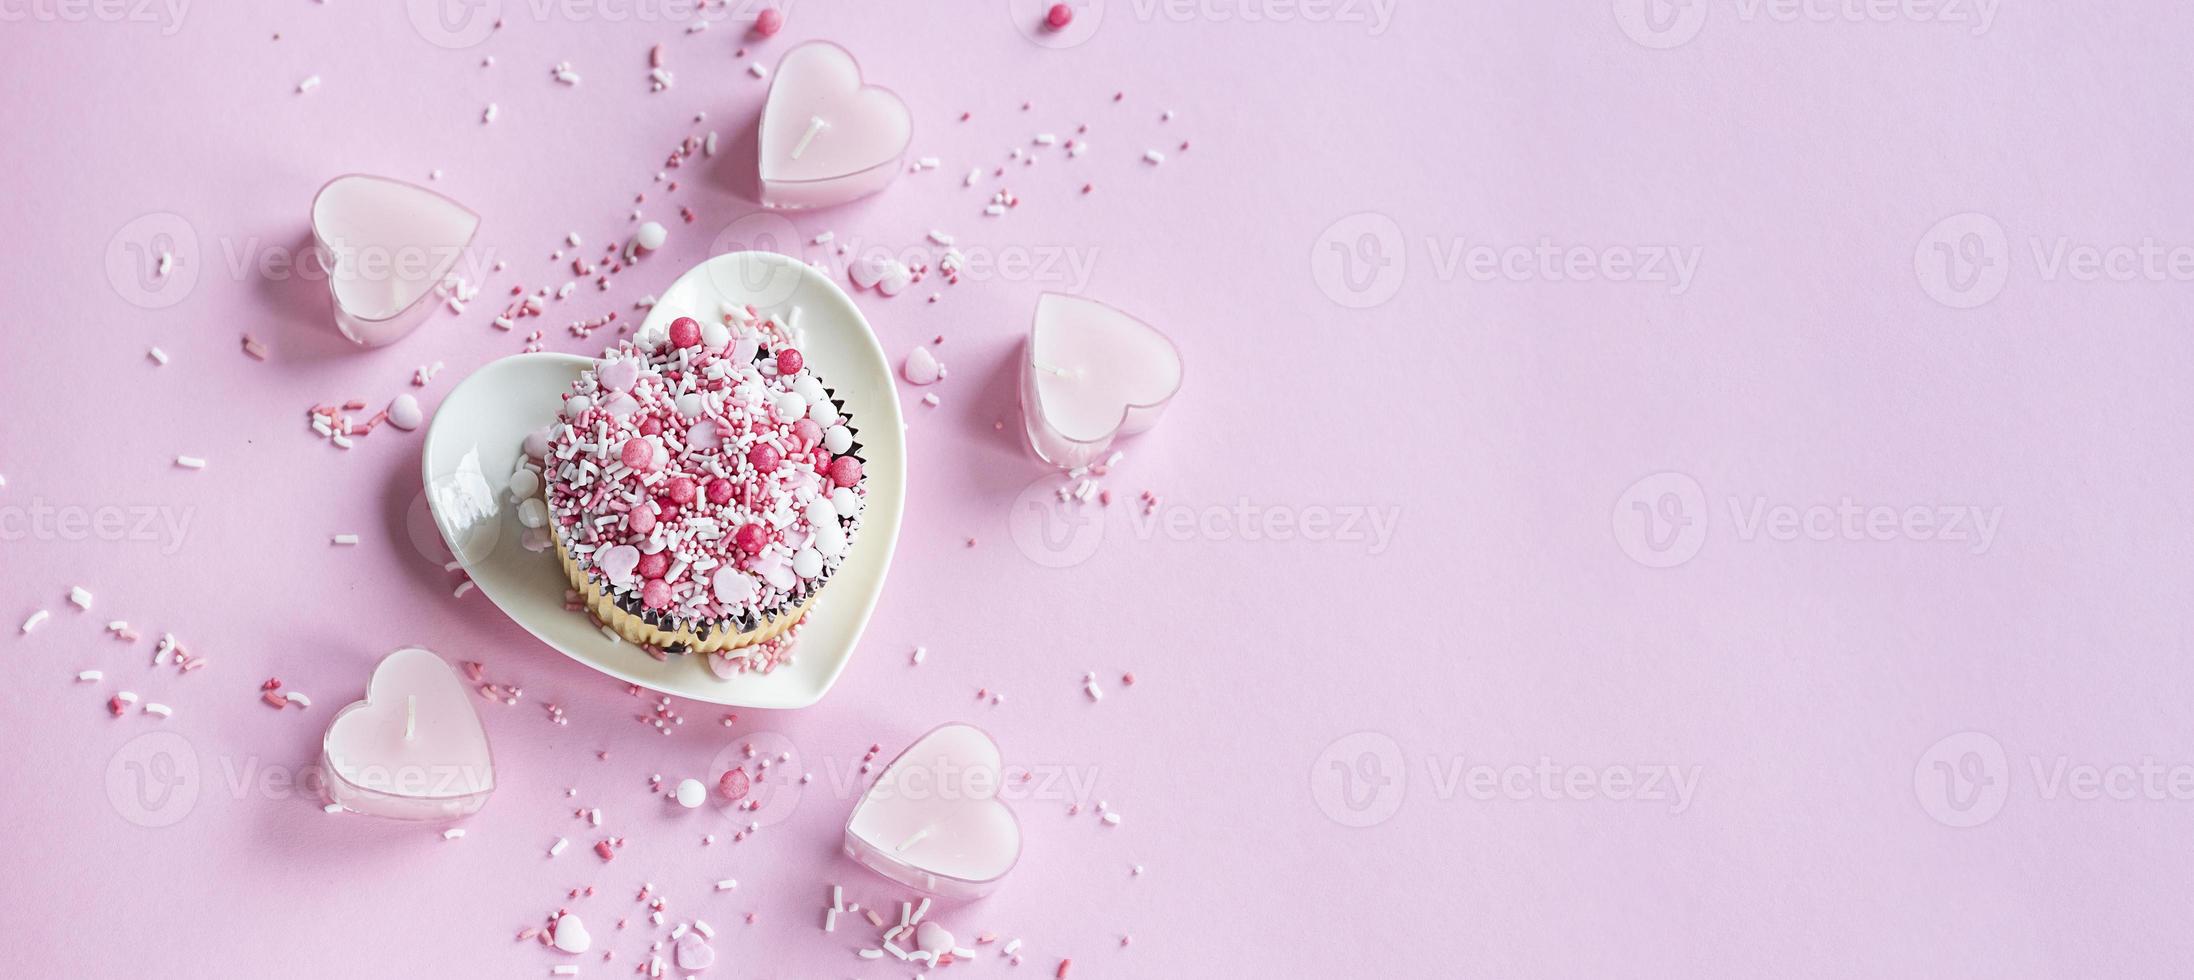 alla hjärtans dag. kaka på en tallrik i de form av en hjärta på en rosa bakgrund. valentine bakgrund. baner. foto